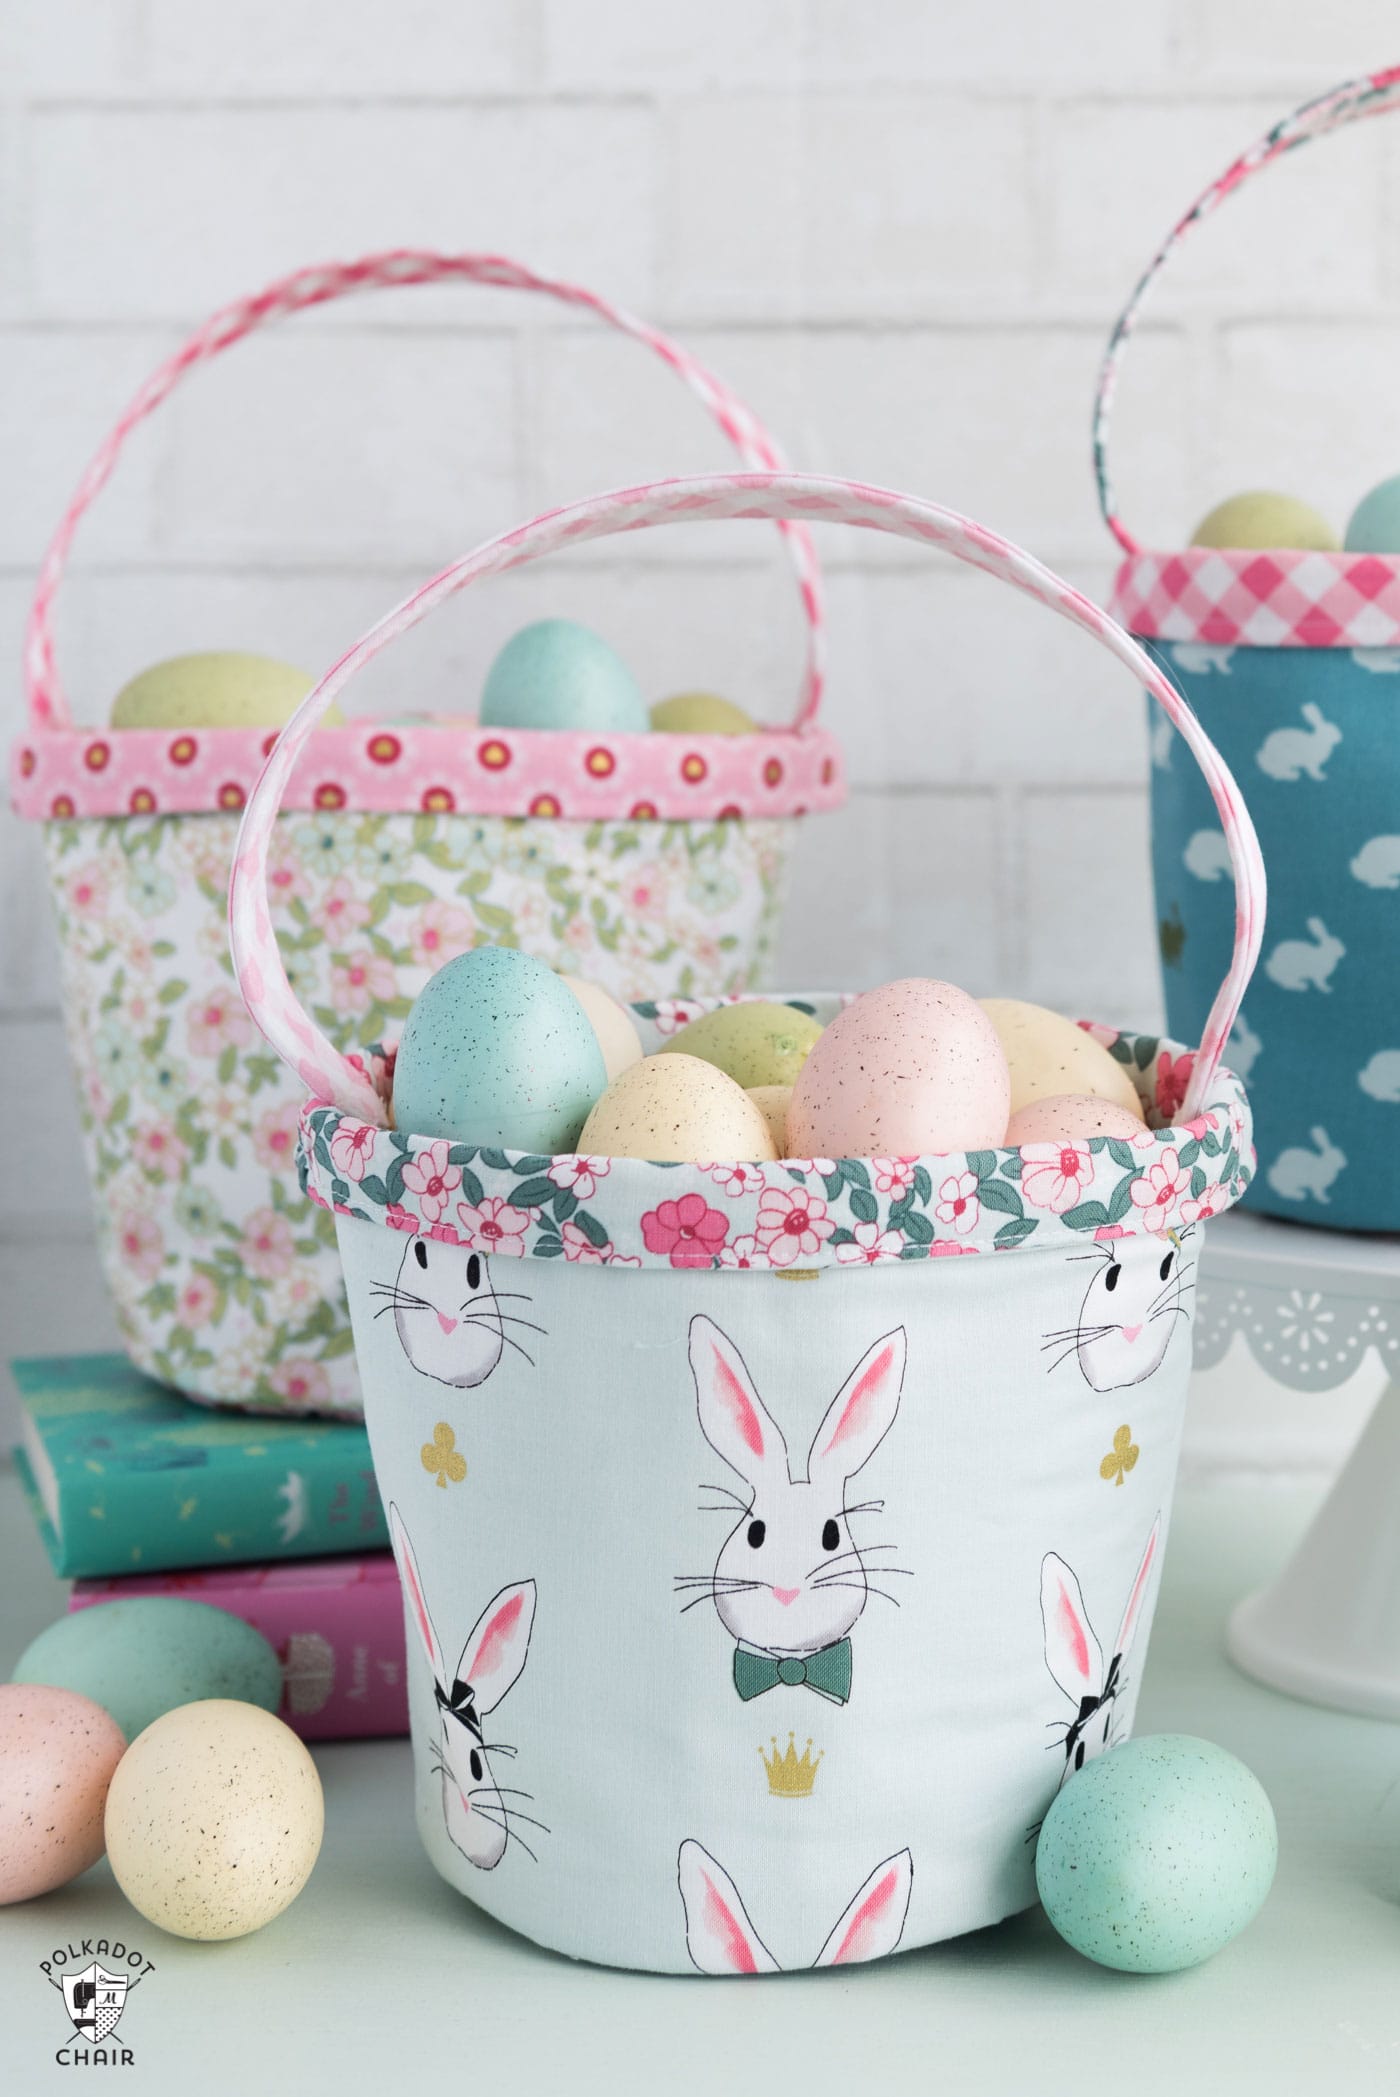 Tutoriel de couture de panier de Pâques gratuit – un joli petit panier en tissu parfait pour le printemps !